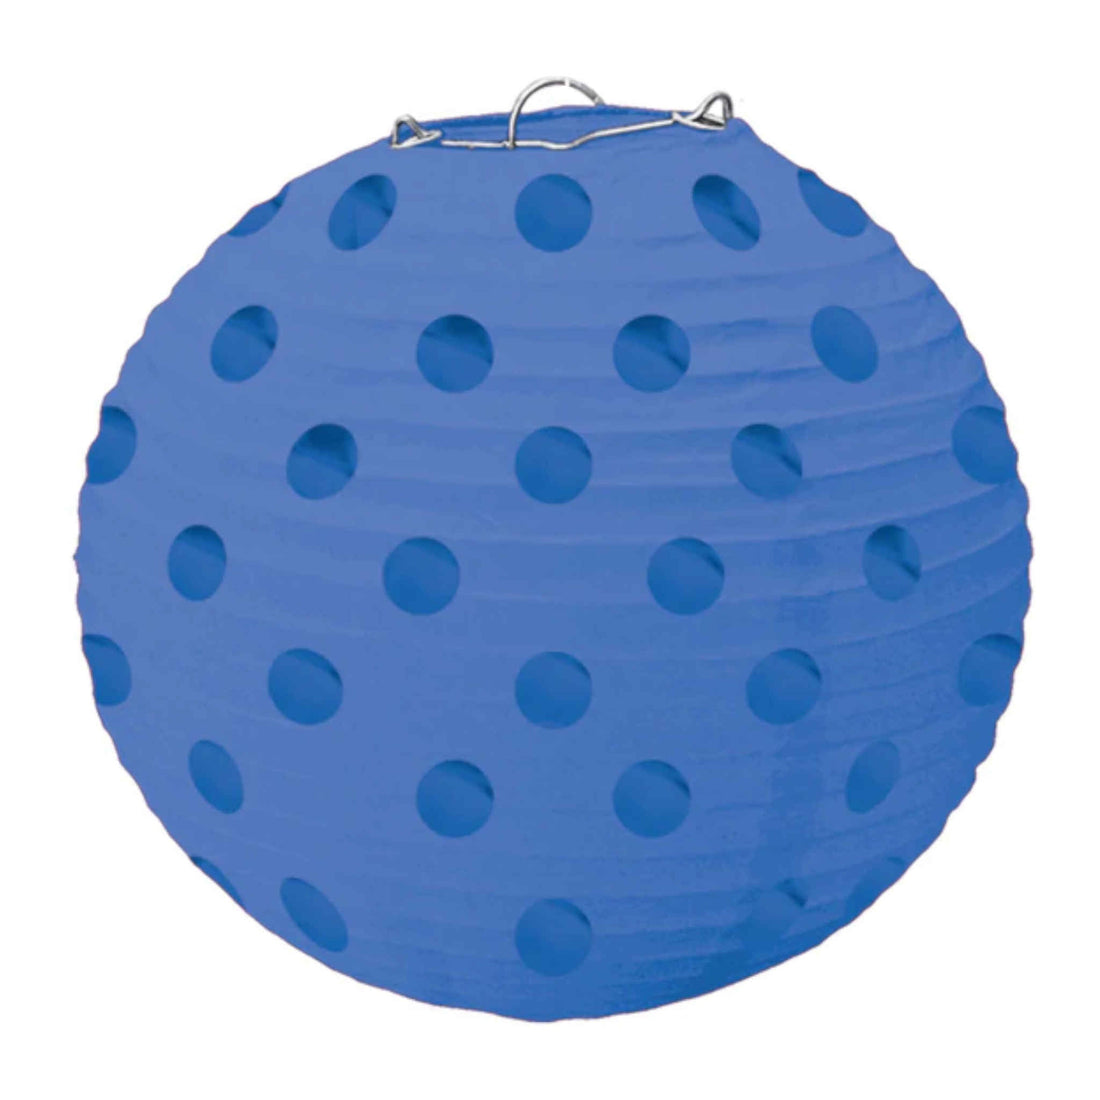 Foil Dot Design Blue Lanterns | 5 Pack | 12.7cm